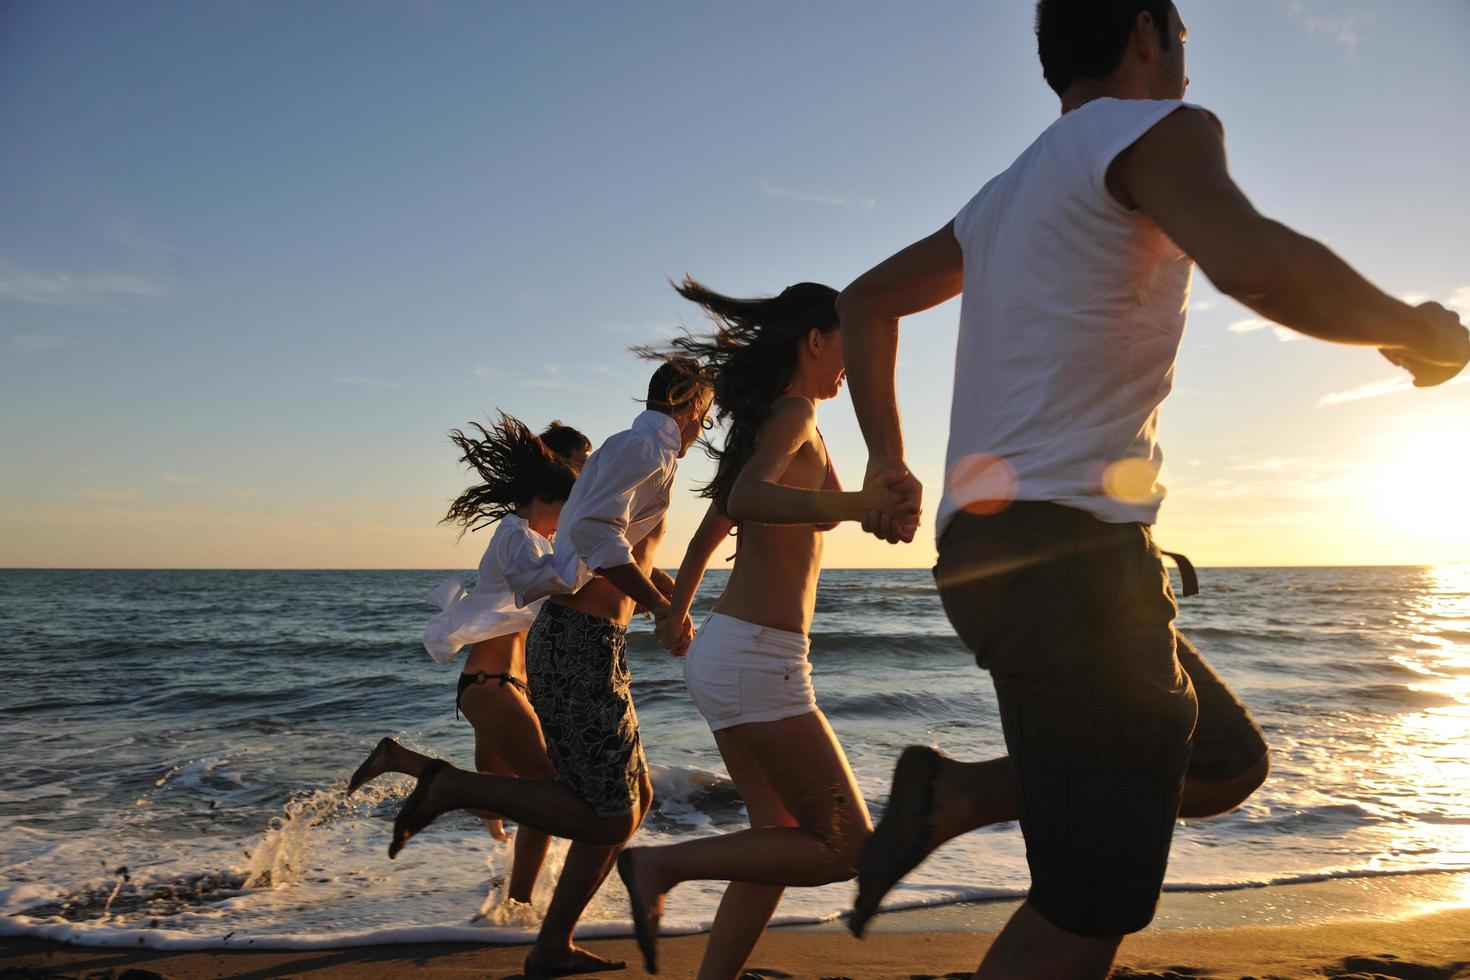 grupo de personas corriendo en la playa foto